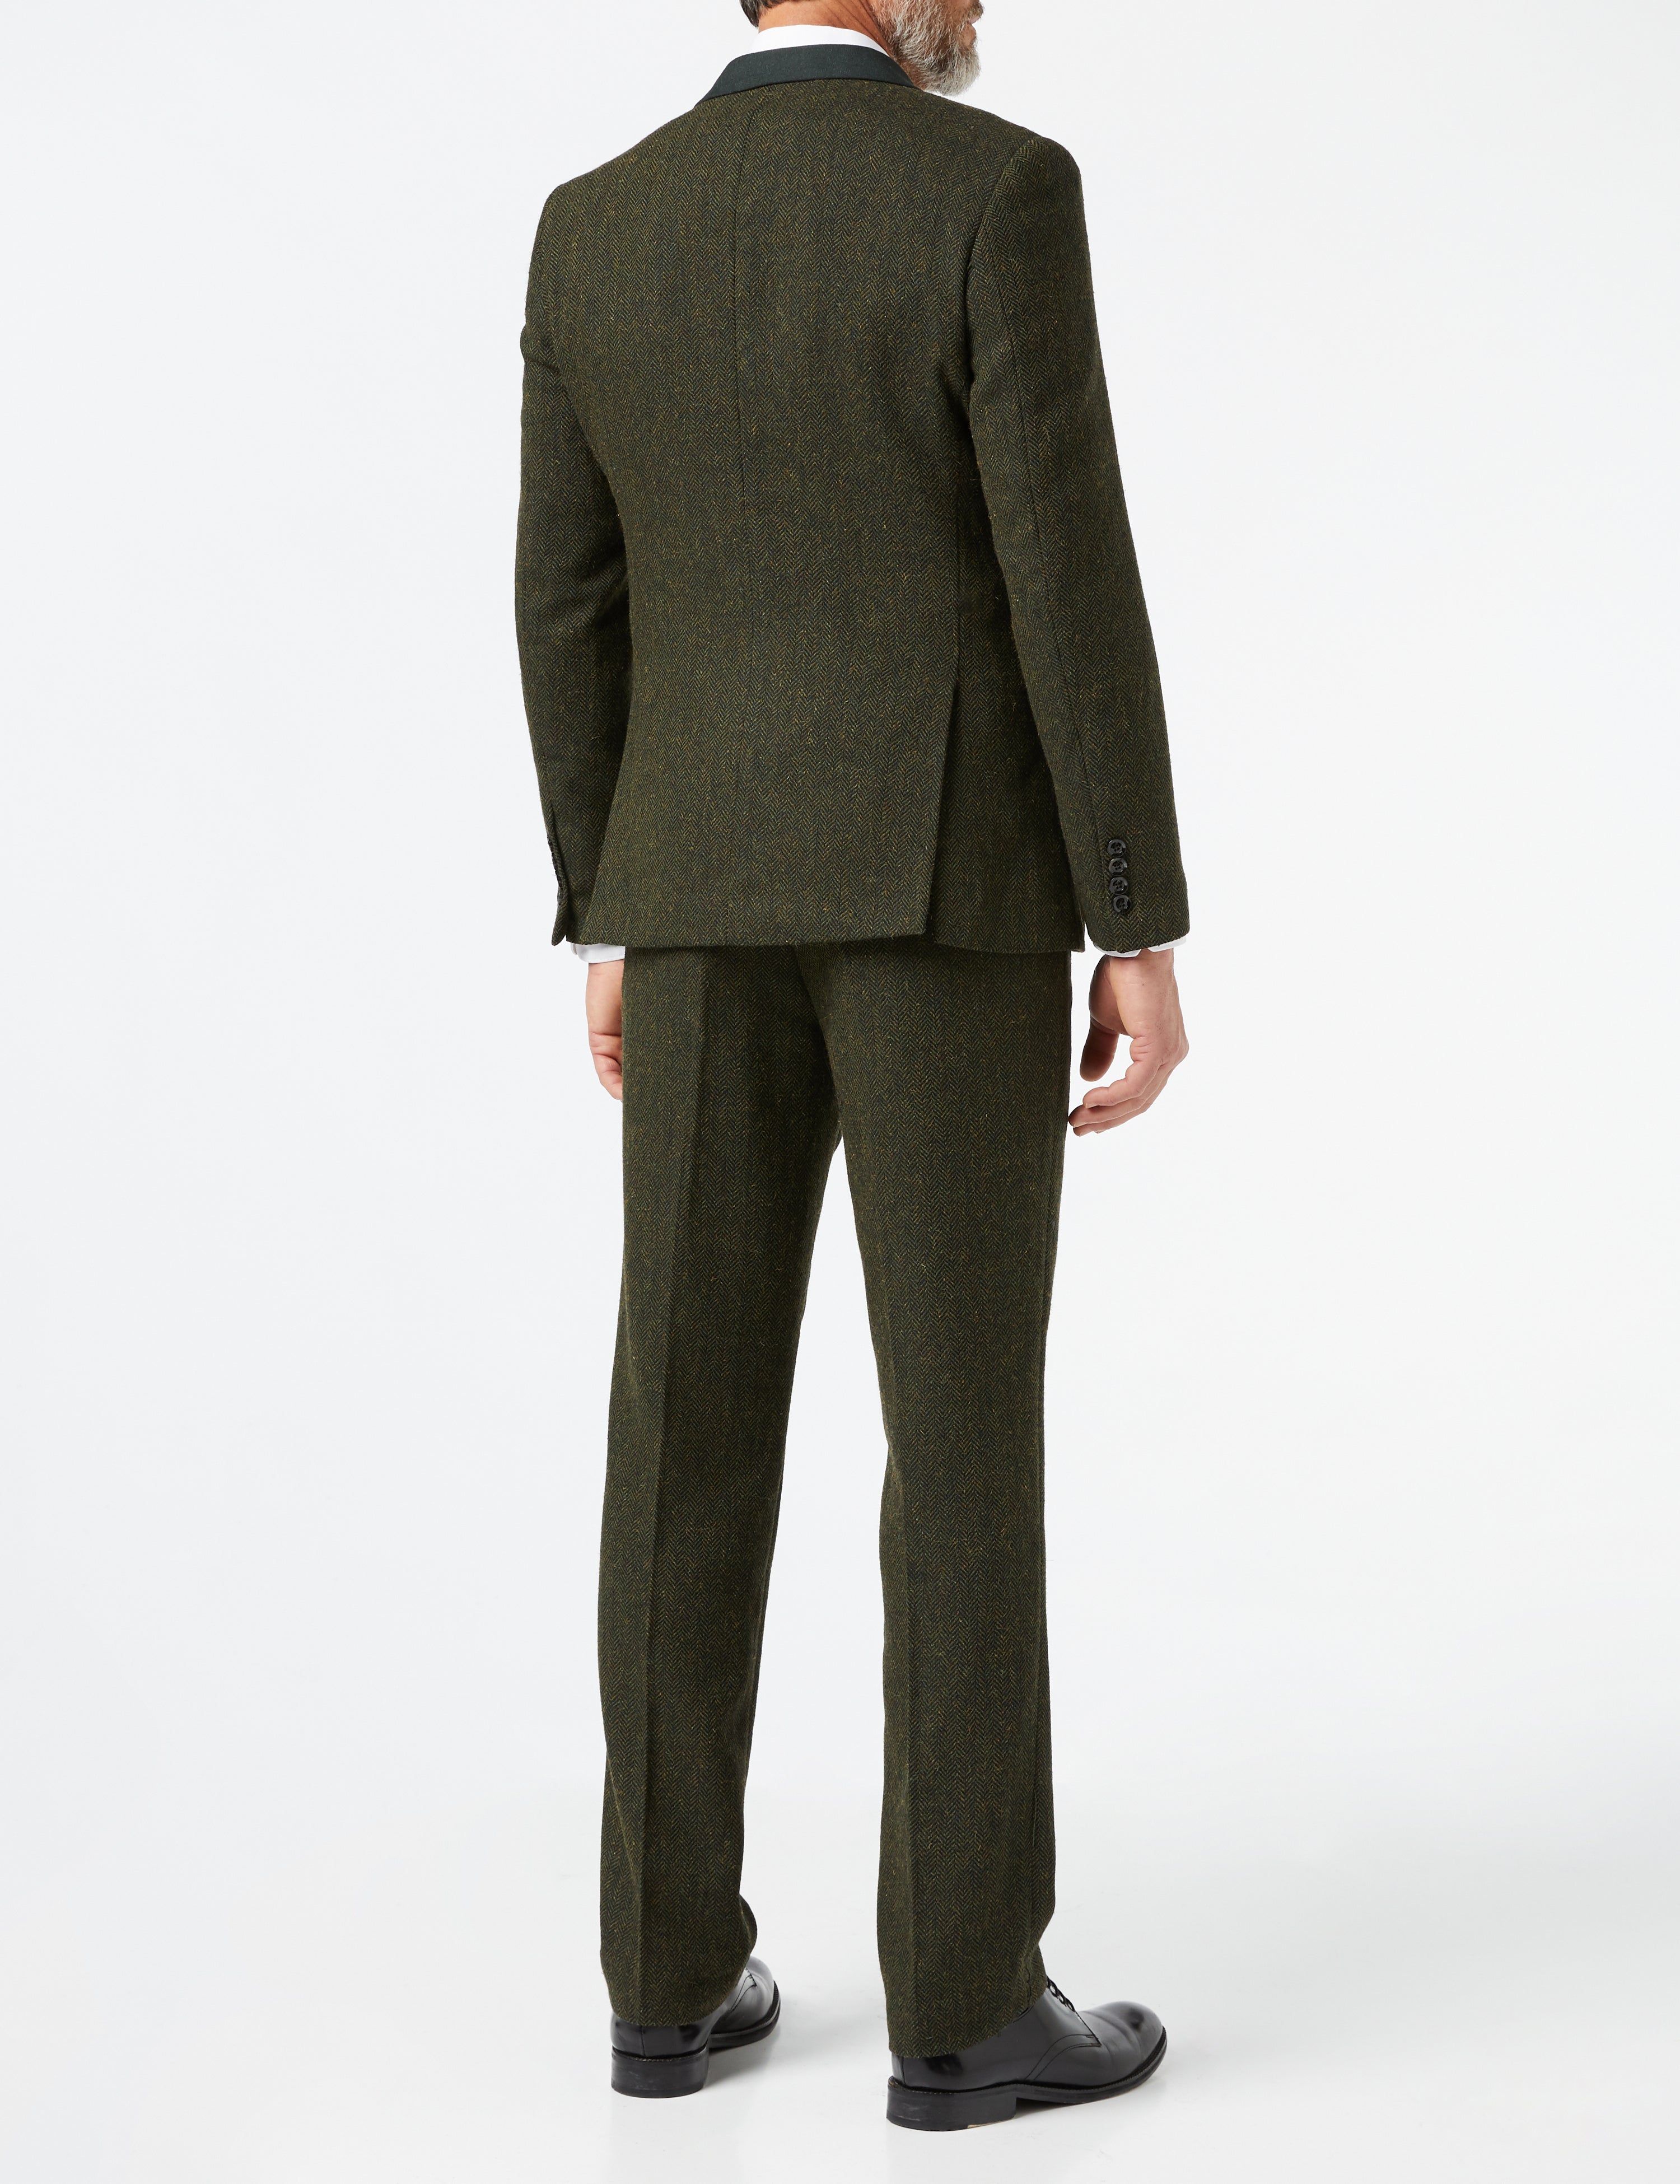 Herringbone Tweed Suit In Olive